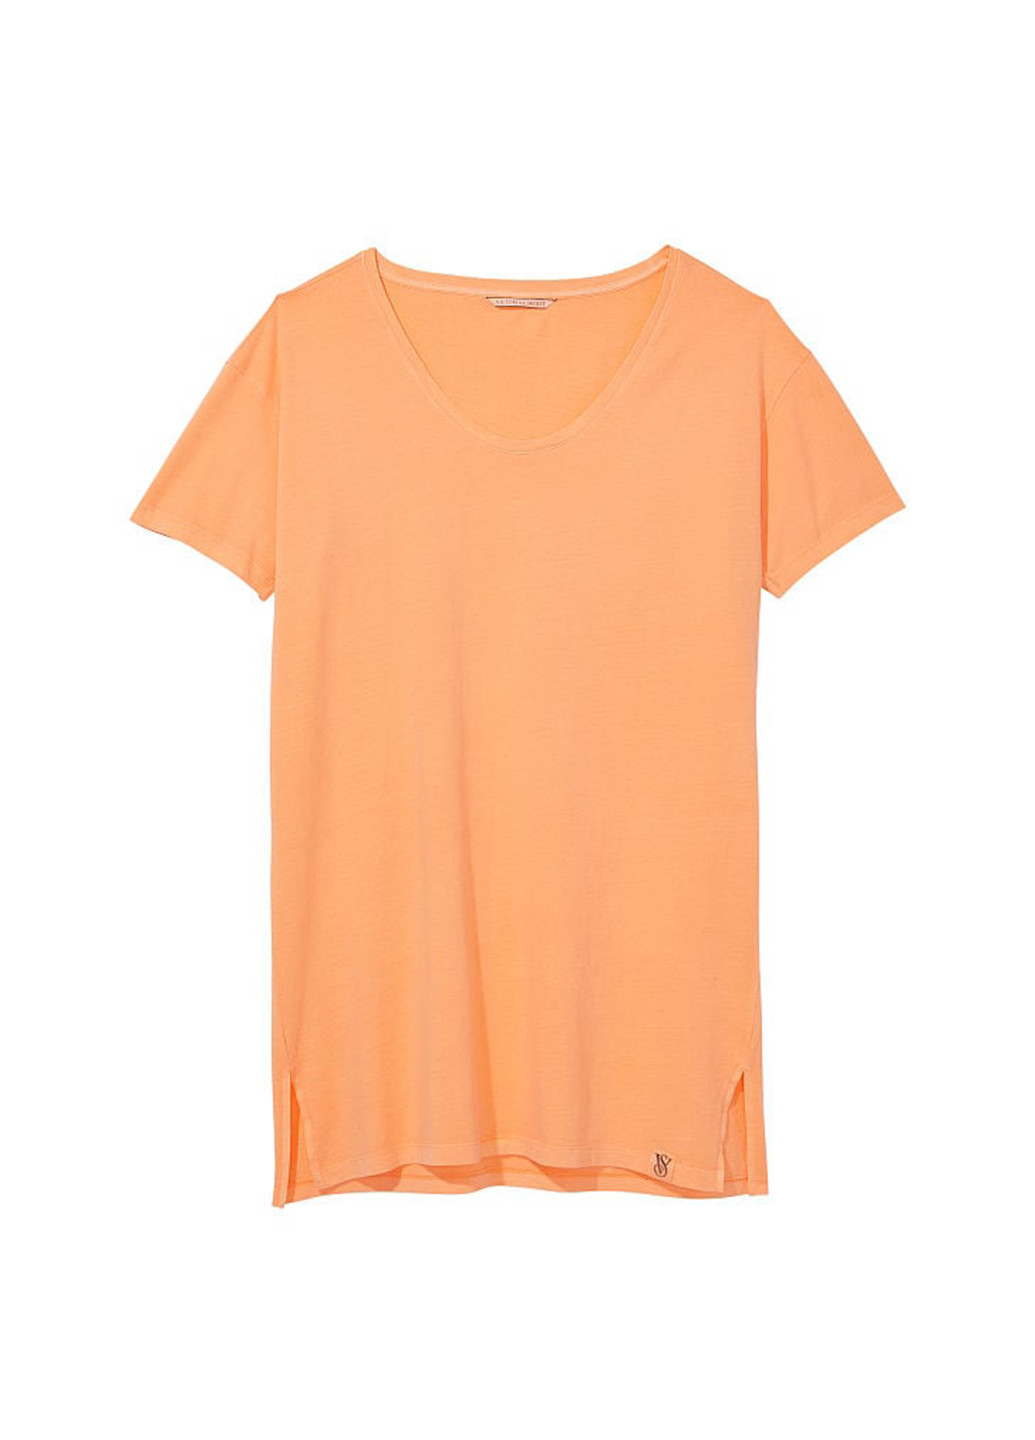 Оранжевое домашнее платье платье-футболка Victoria's Secret однотонное